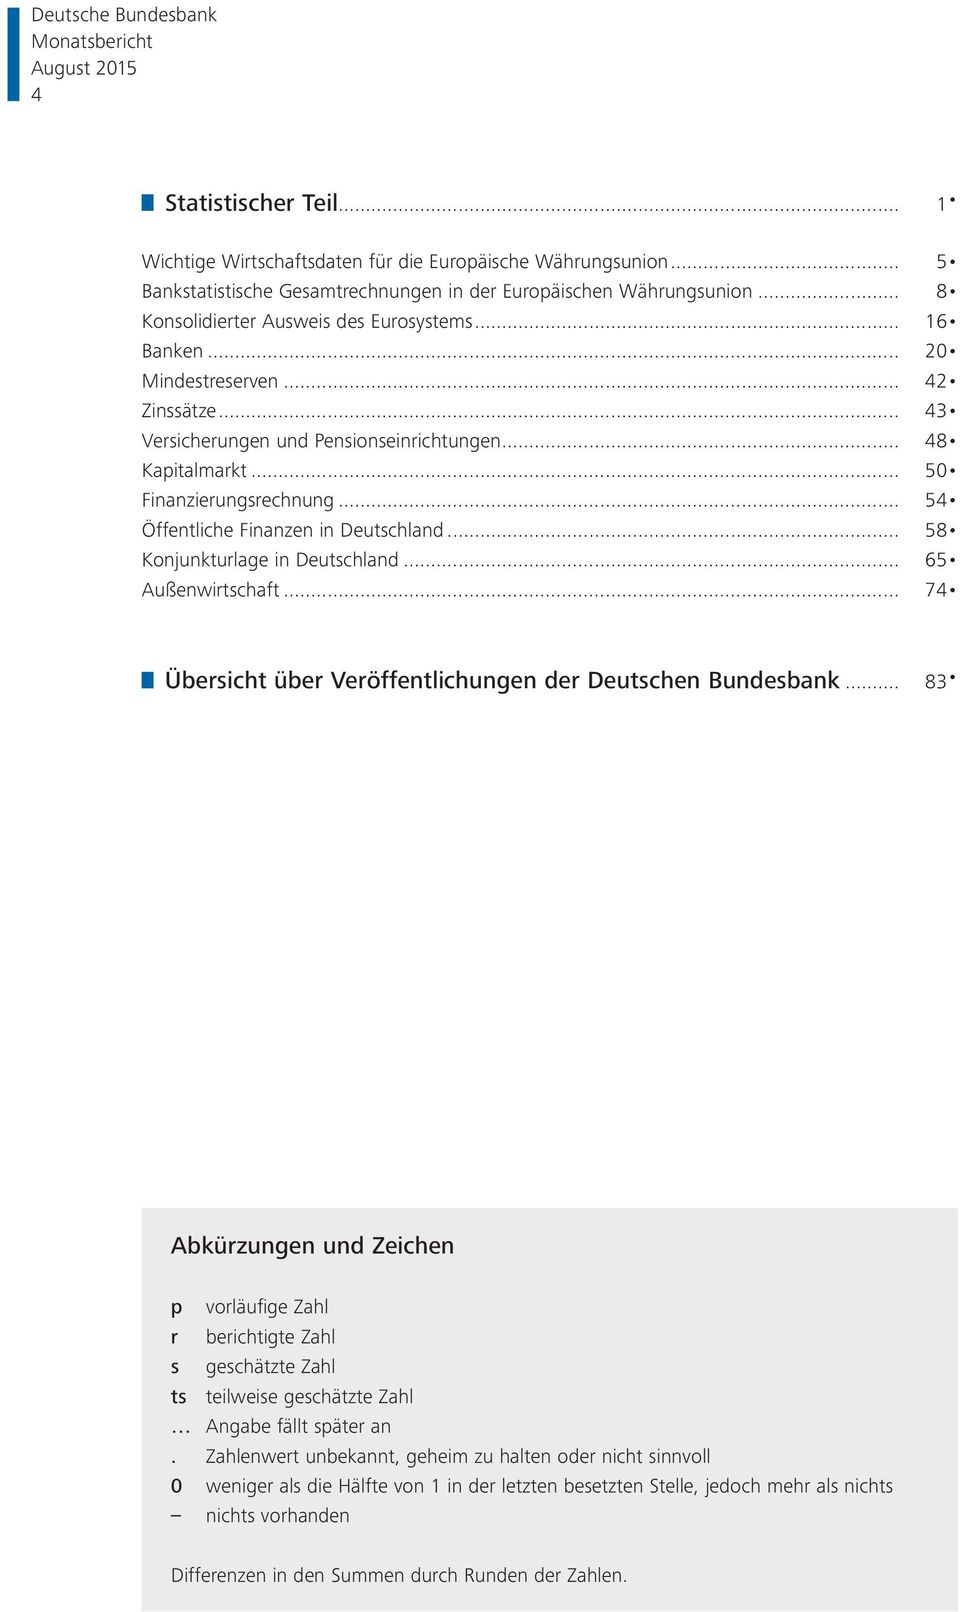 .. 54 Öffentliche Finanzen in Deutschland... 58 Konjunkturlage in Deutschland... 65 Außenwirtschaft... 74 Übersicht über Veröffentlichungen der Deutschen Bundesbank.